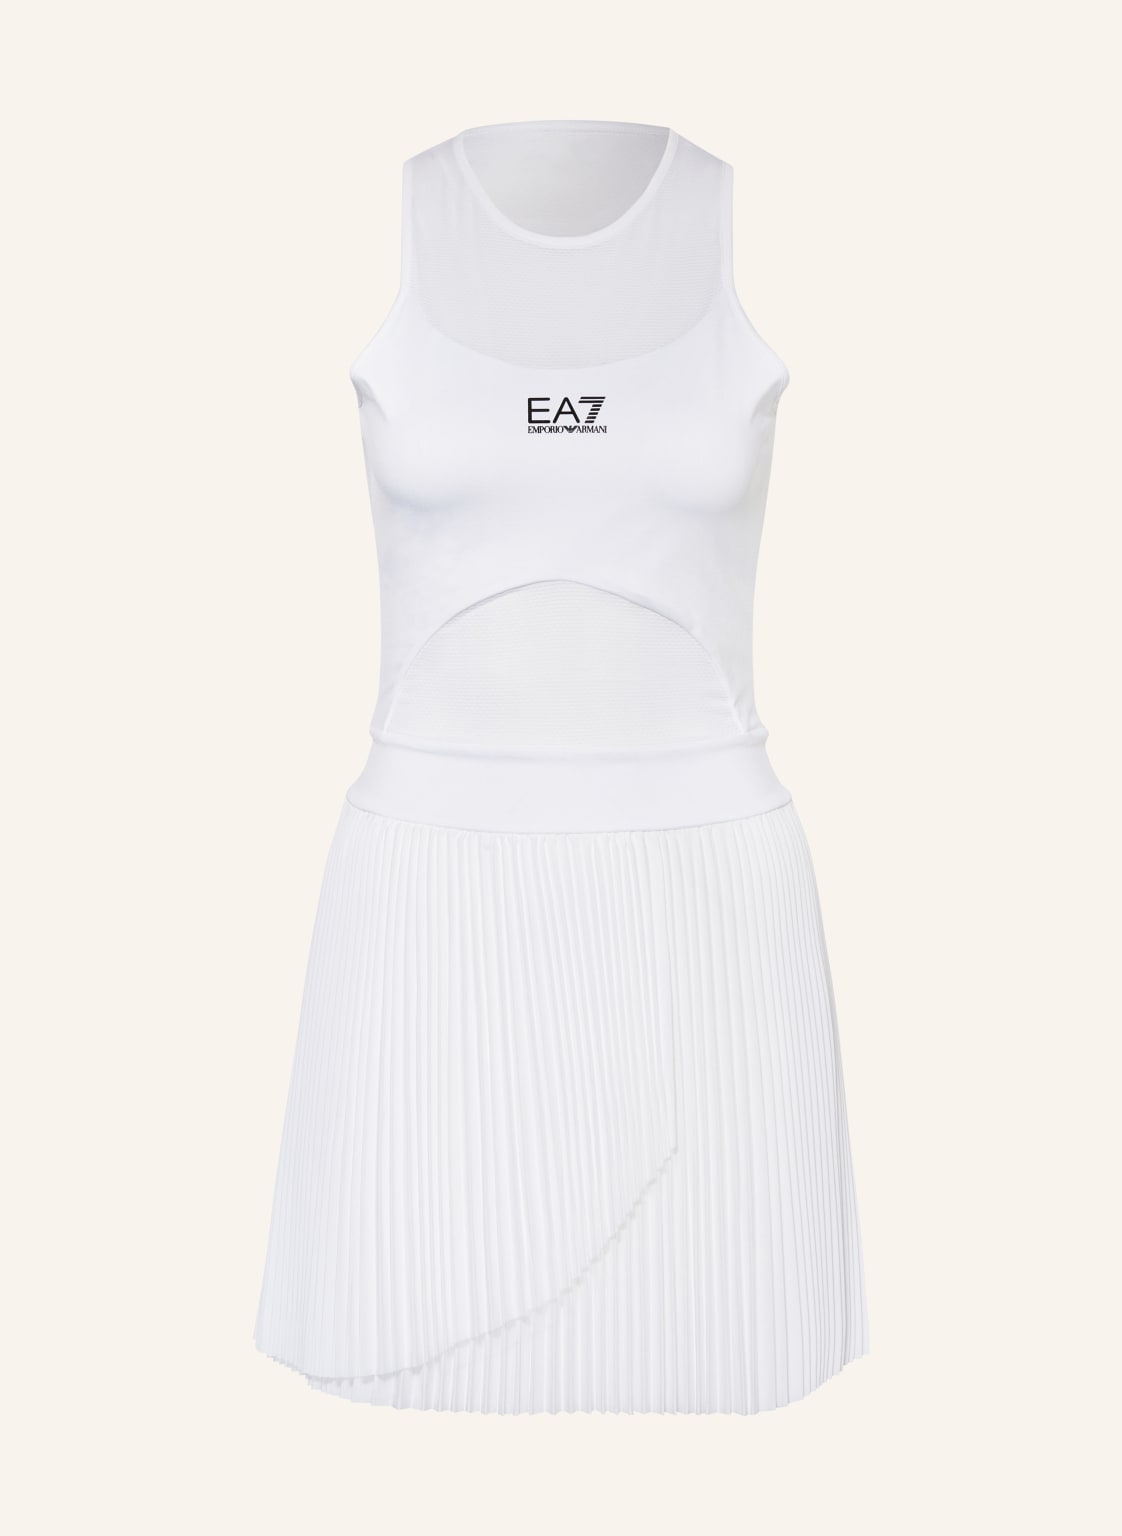 ea7 Emporio Armani Tenniskleid weiss von EA7 EMPORIO ARMANI